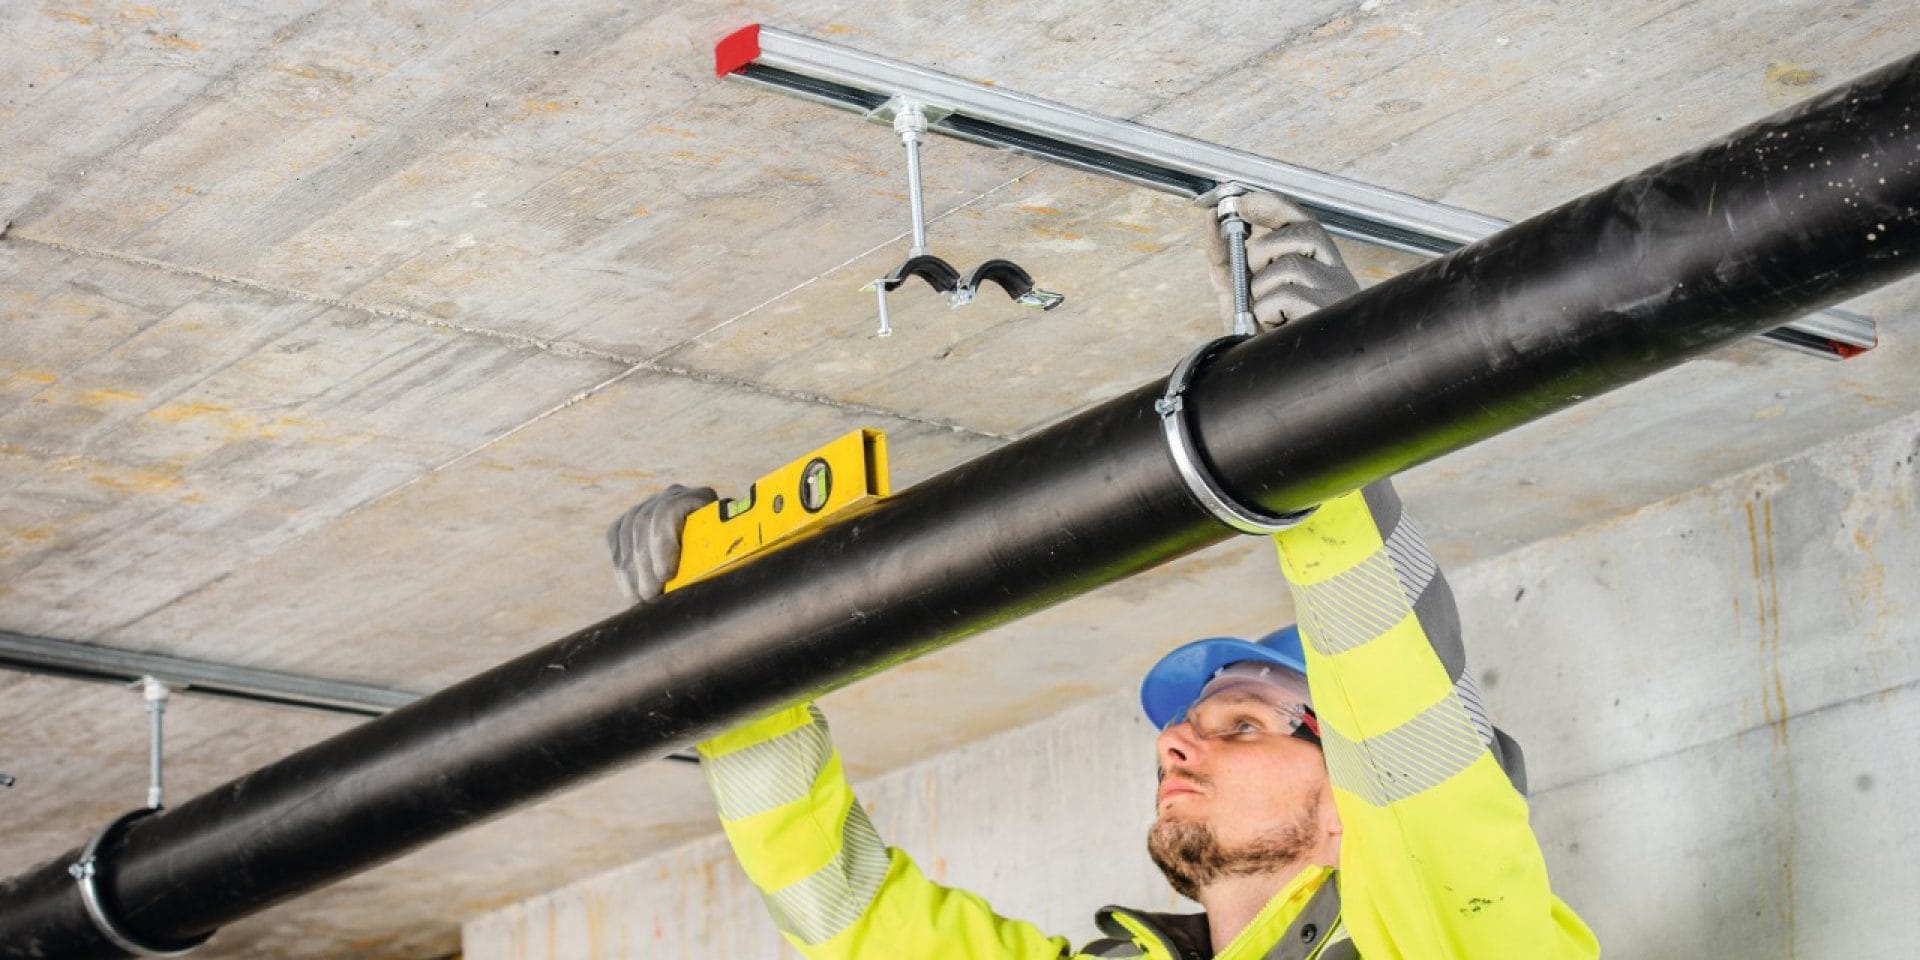 Componenti per installazione Hilti in uso per sospendere una tubazione su binari montati a soffitto